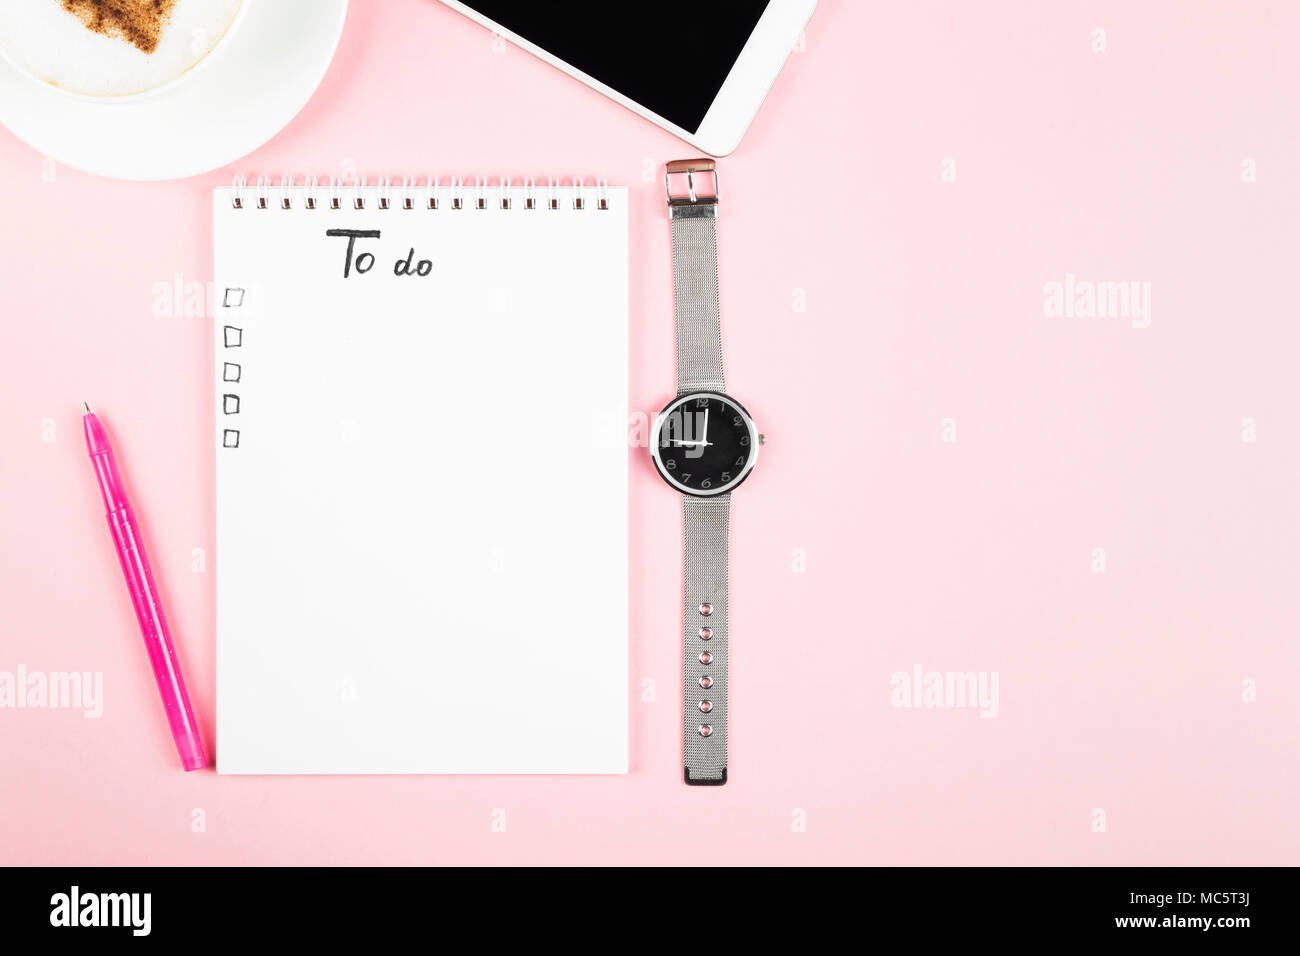 Il concetto di pianificazione mattino, lista Da fare - cappuccino, notebook, penna, telefono, guarda su sfondo rosa. Vista superiore, spazio di copia Foto Stock